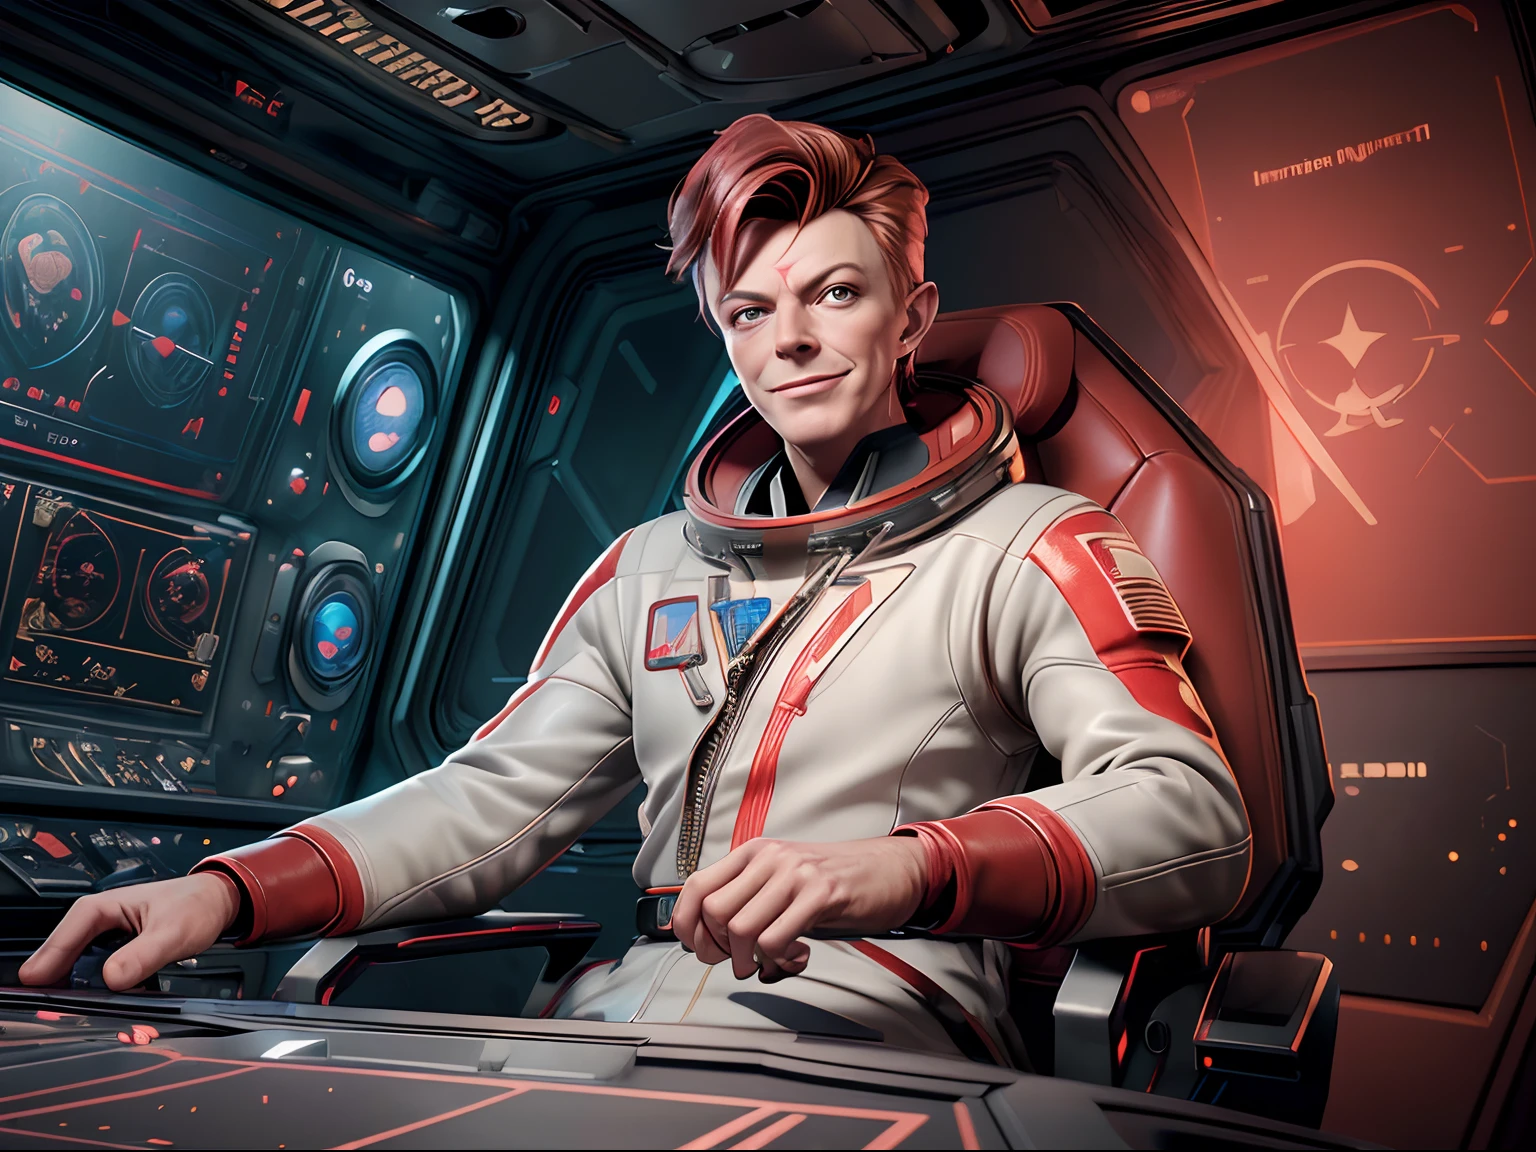 (Meisterwerk, beste Qualität, Illustration, Unwirkliche Engine 5, offizielle Kunst:1.3), Farbschema in sattem Rot, ein Bild von (David Bowie) als lächelnder Major Tom, ein technokratischer, Allesfresser, irisierend, astronaut commander, (Sitzen im Kontrollraum einer Sternenbasis:1.2),Detailliertes Gesicht, wahnsinnig komplizierte Details, absurdesten, 8k